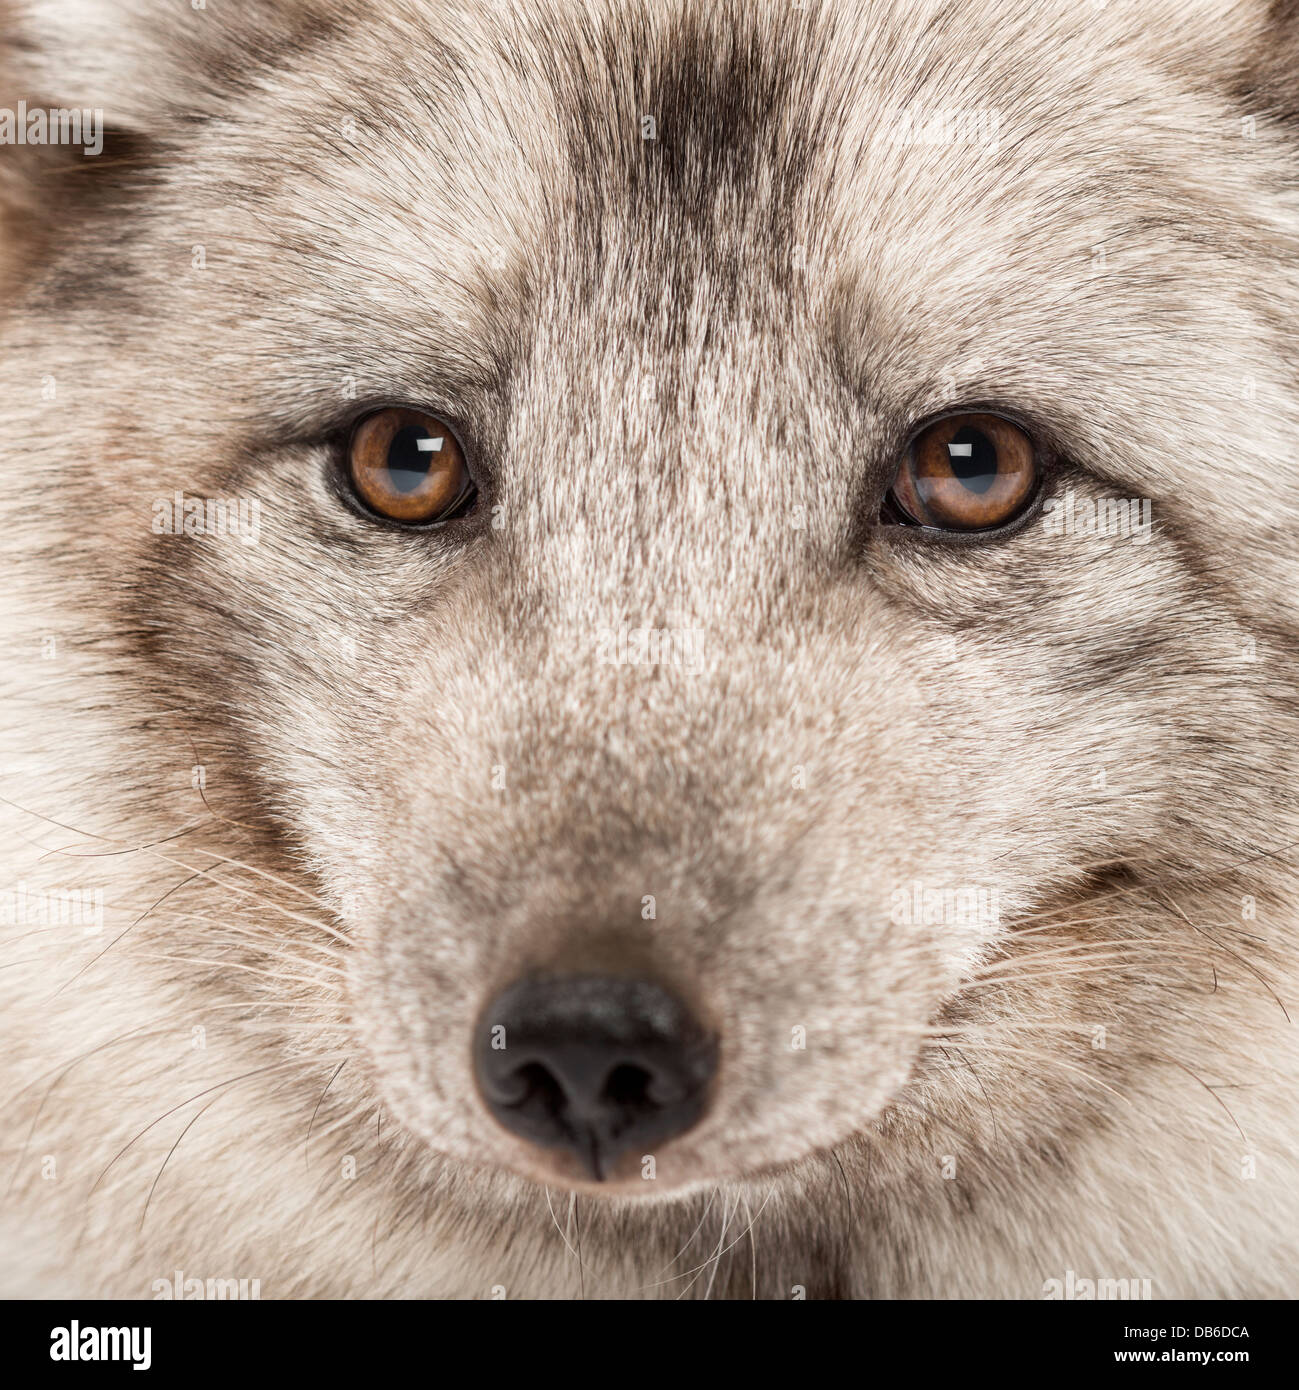 Close-up de renard arctique, Vulpes lagopus, également connu sous le nom de White Fox, renard polaire ou neige fox Banque D'Images